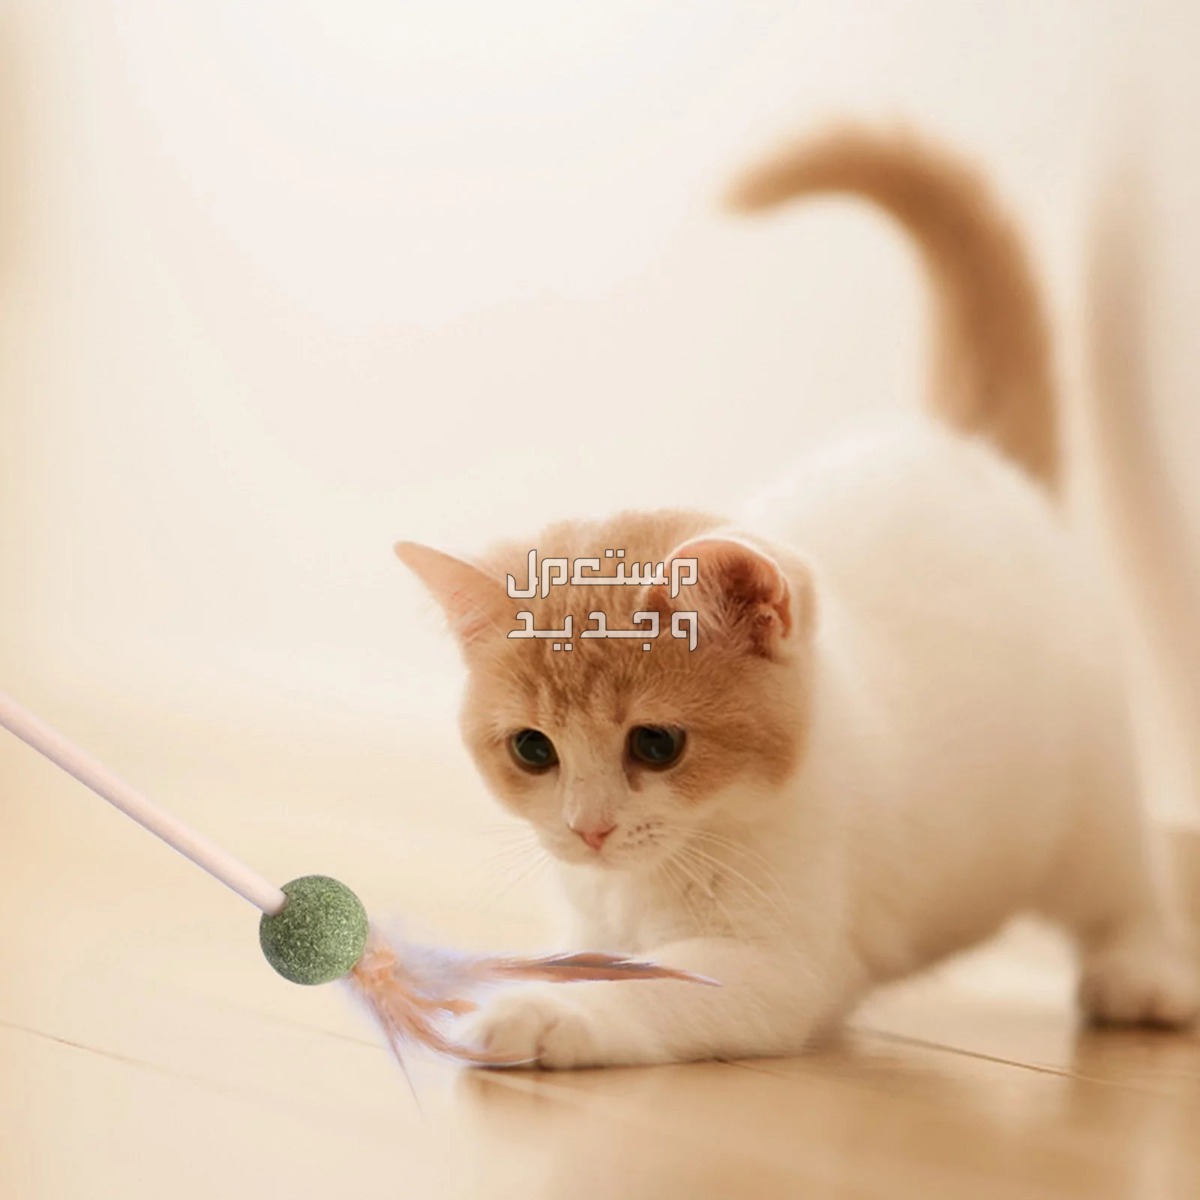 لمحبي القطط - تعرف على أفضل العاب قطط متحركة في المغرب قطة تلعب بالريشة